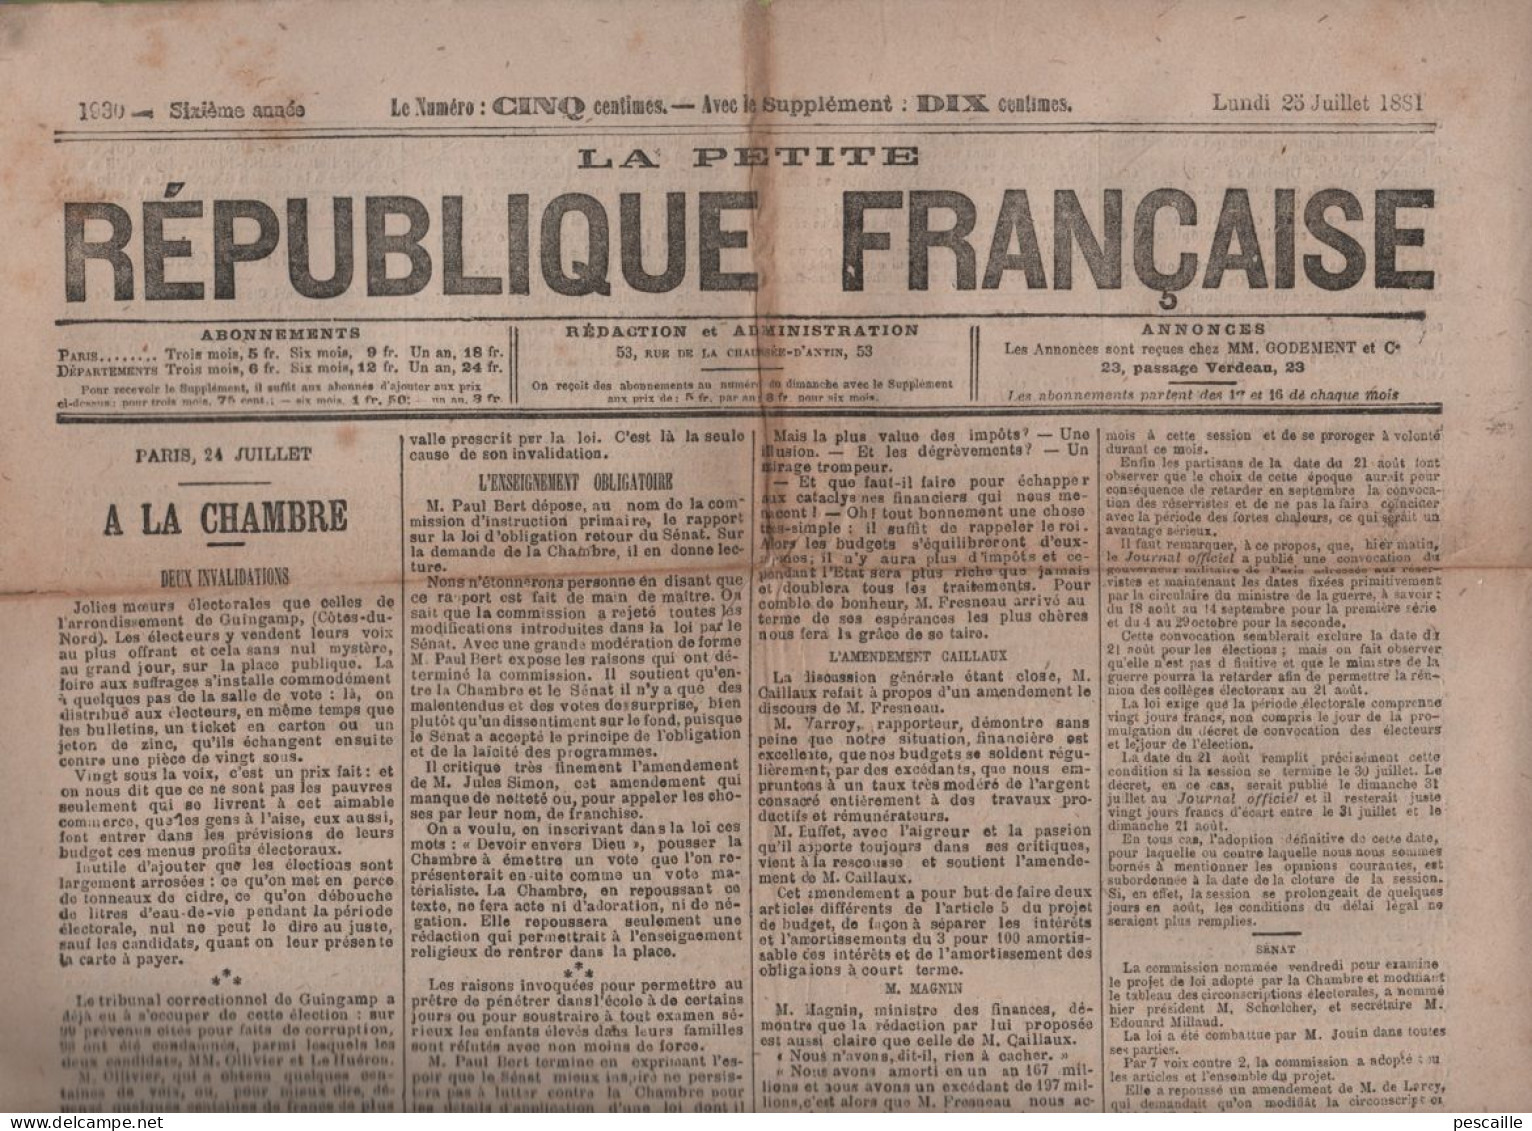 PETITE REPUBLIQUE FRANCAISE 25 7 1881 - GUINGAMP - ENSEIGNEMENT OBLIGATOIRE - BUDGET - ELECTIONS - TUNISIE - RIBEAUVILLE - 1850 - 1899